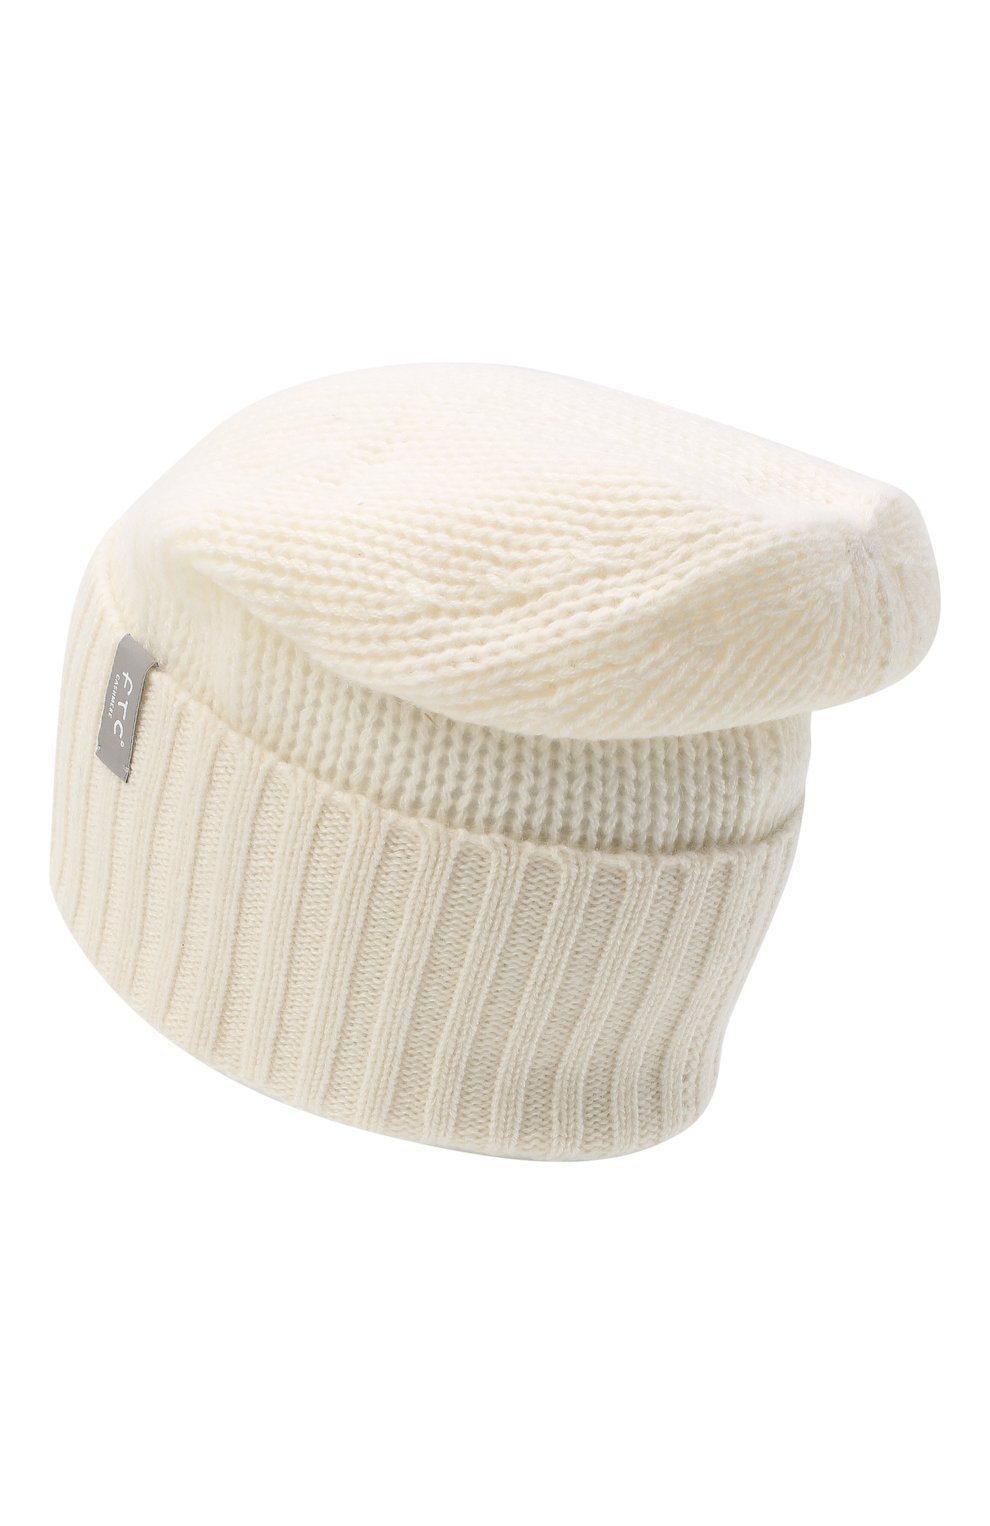 Женская кашемировая шапка FTC белого цвета, арт. 770-0950 | Фото 2 (Материал: Текстиль, Кашемир, Шерсть)